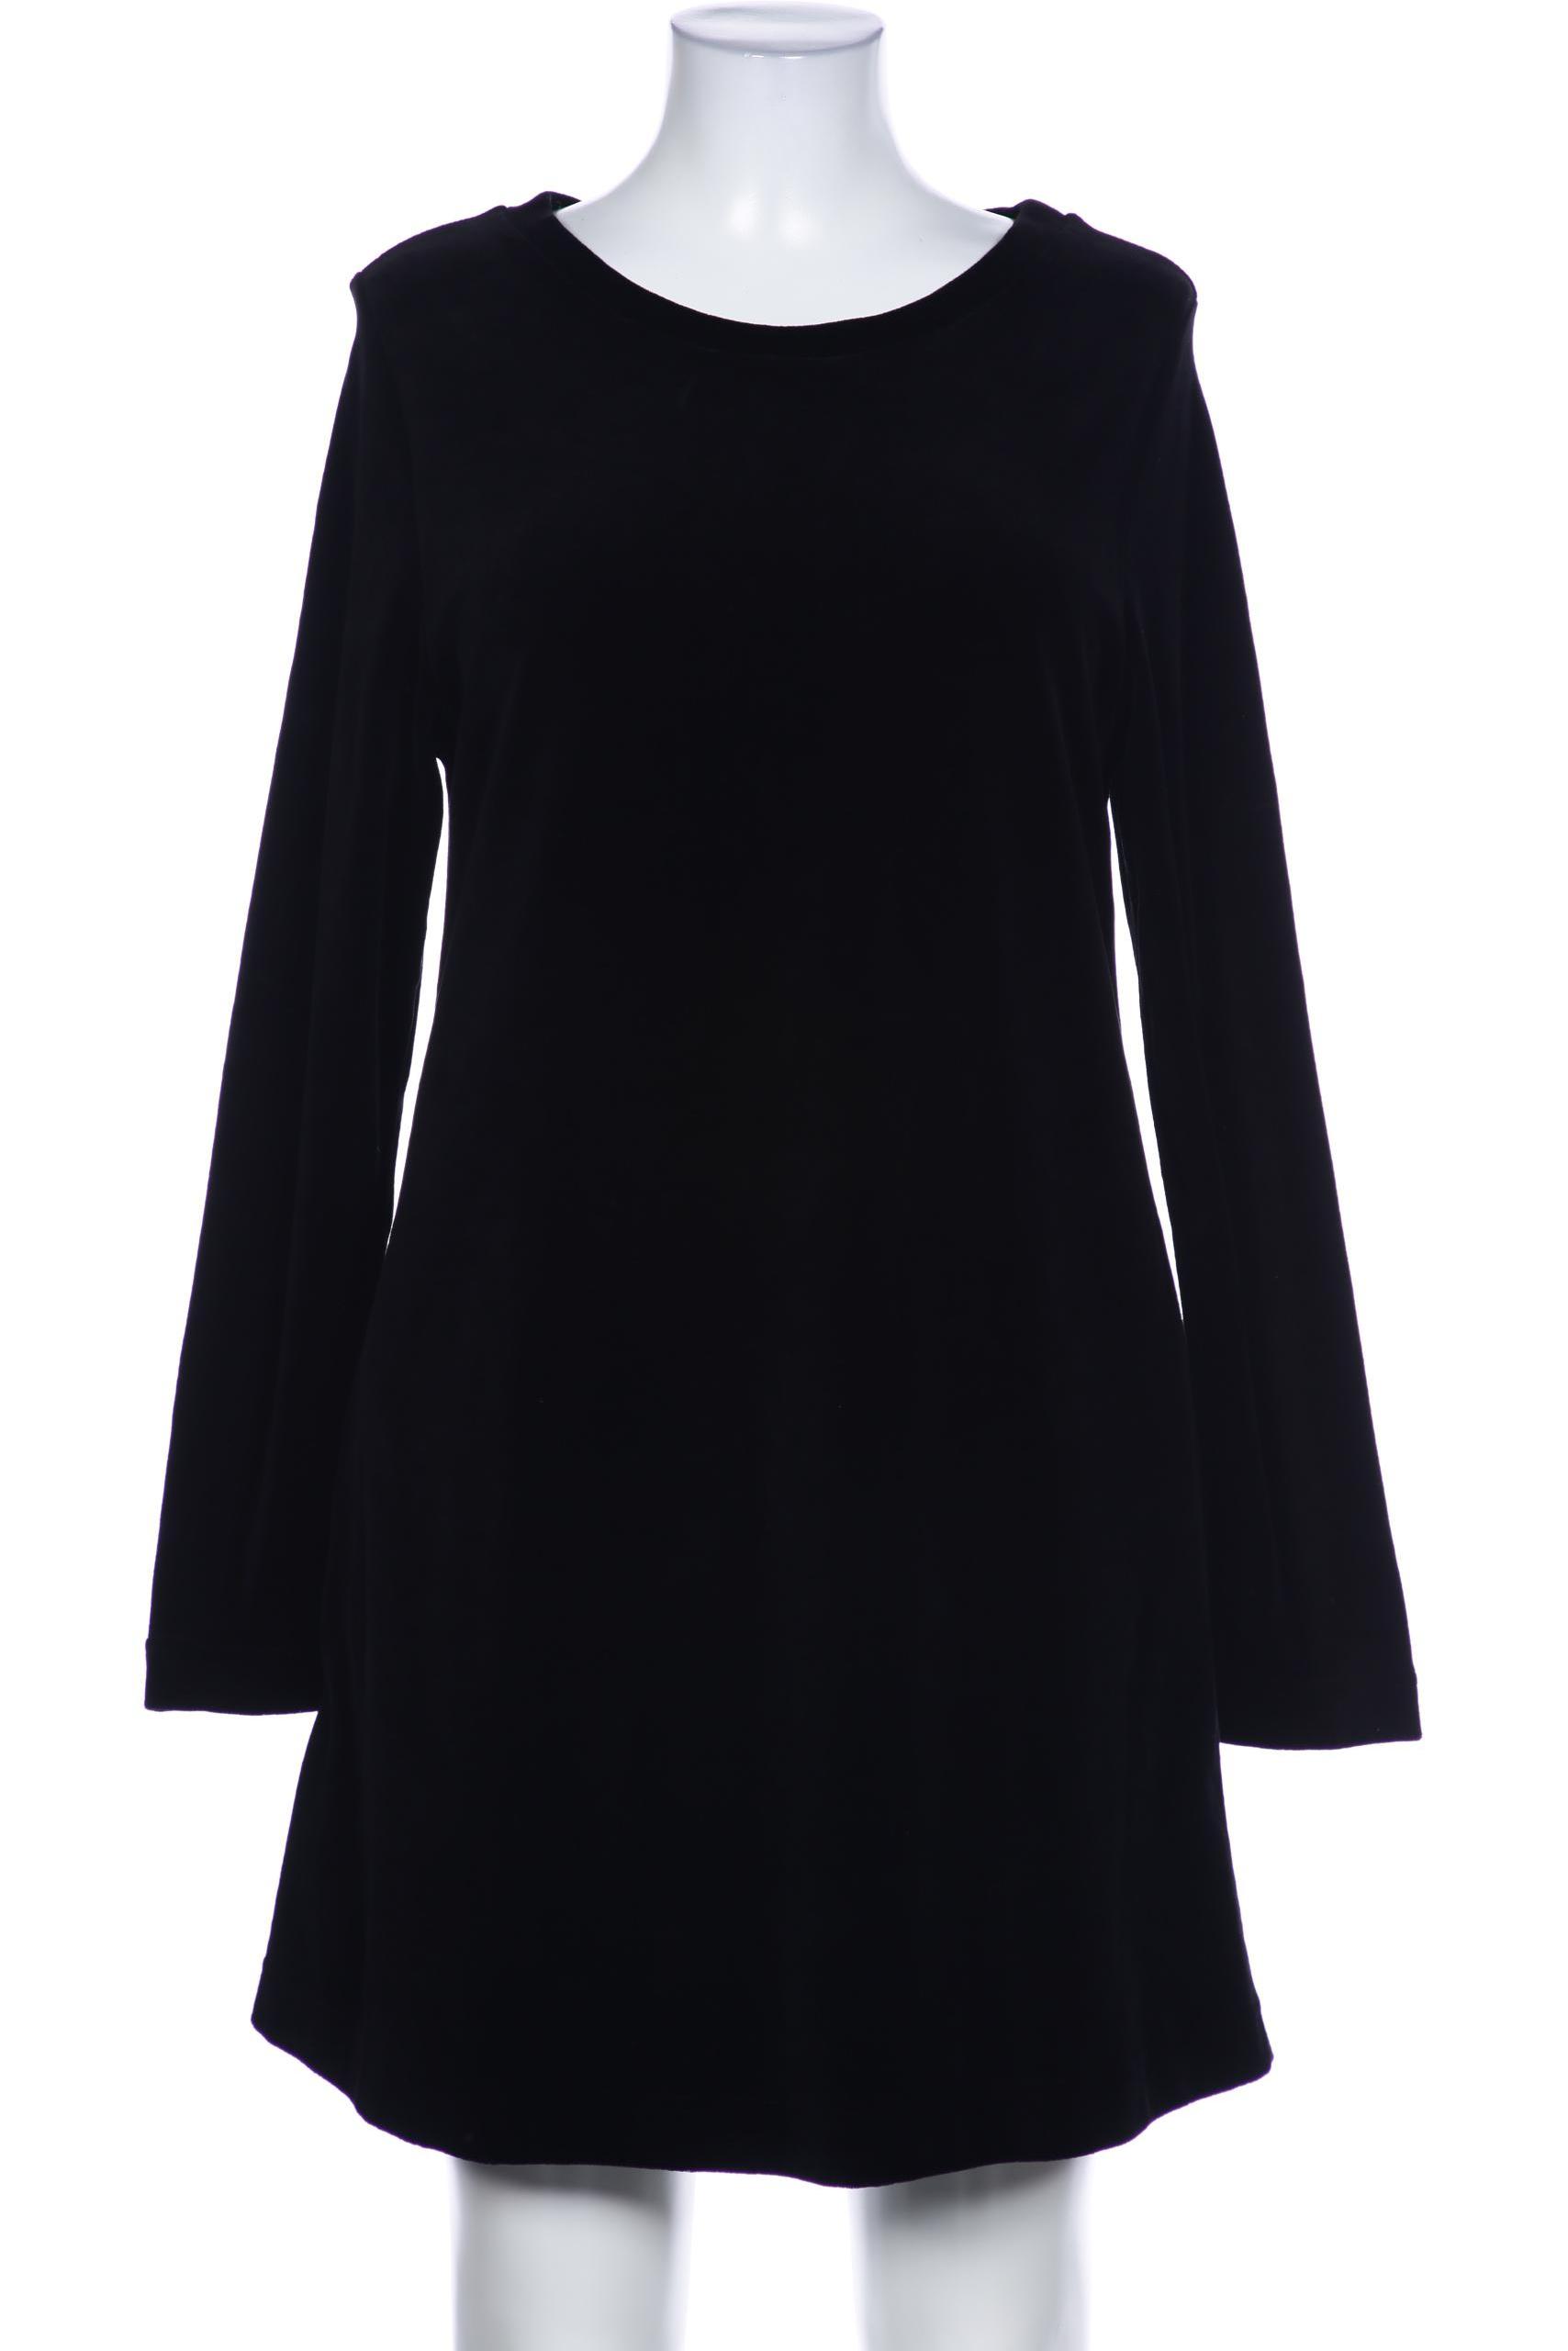 Deerberg Damen Kleid, schwarz, Gr. 44 von Deerberg